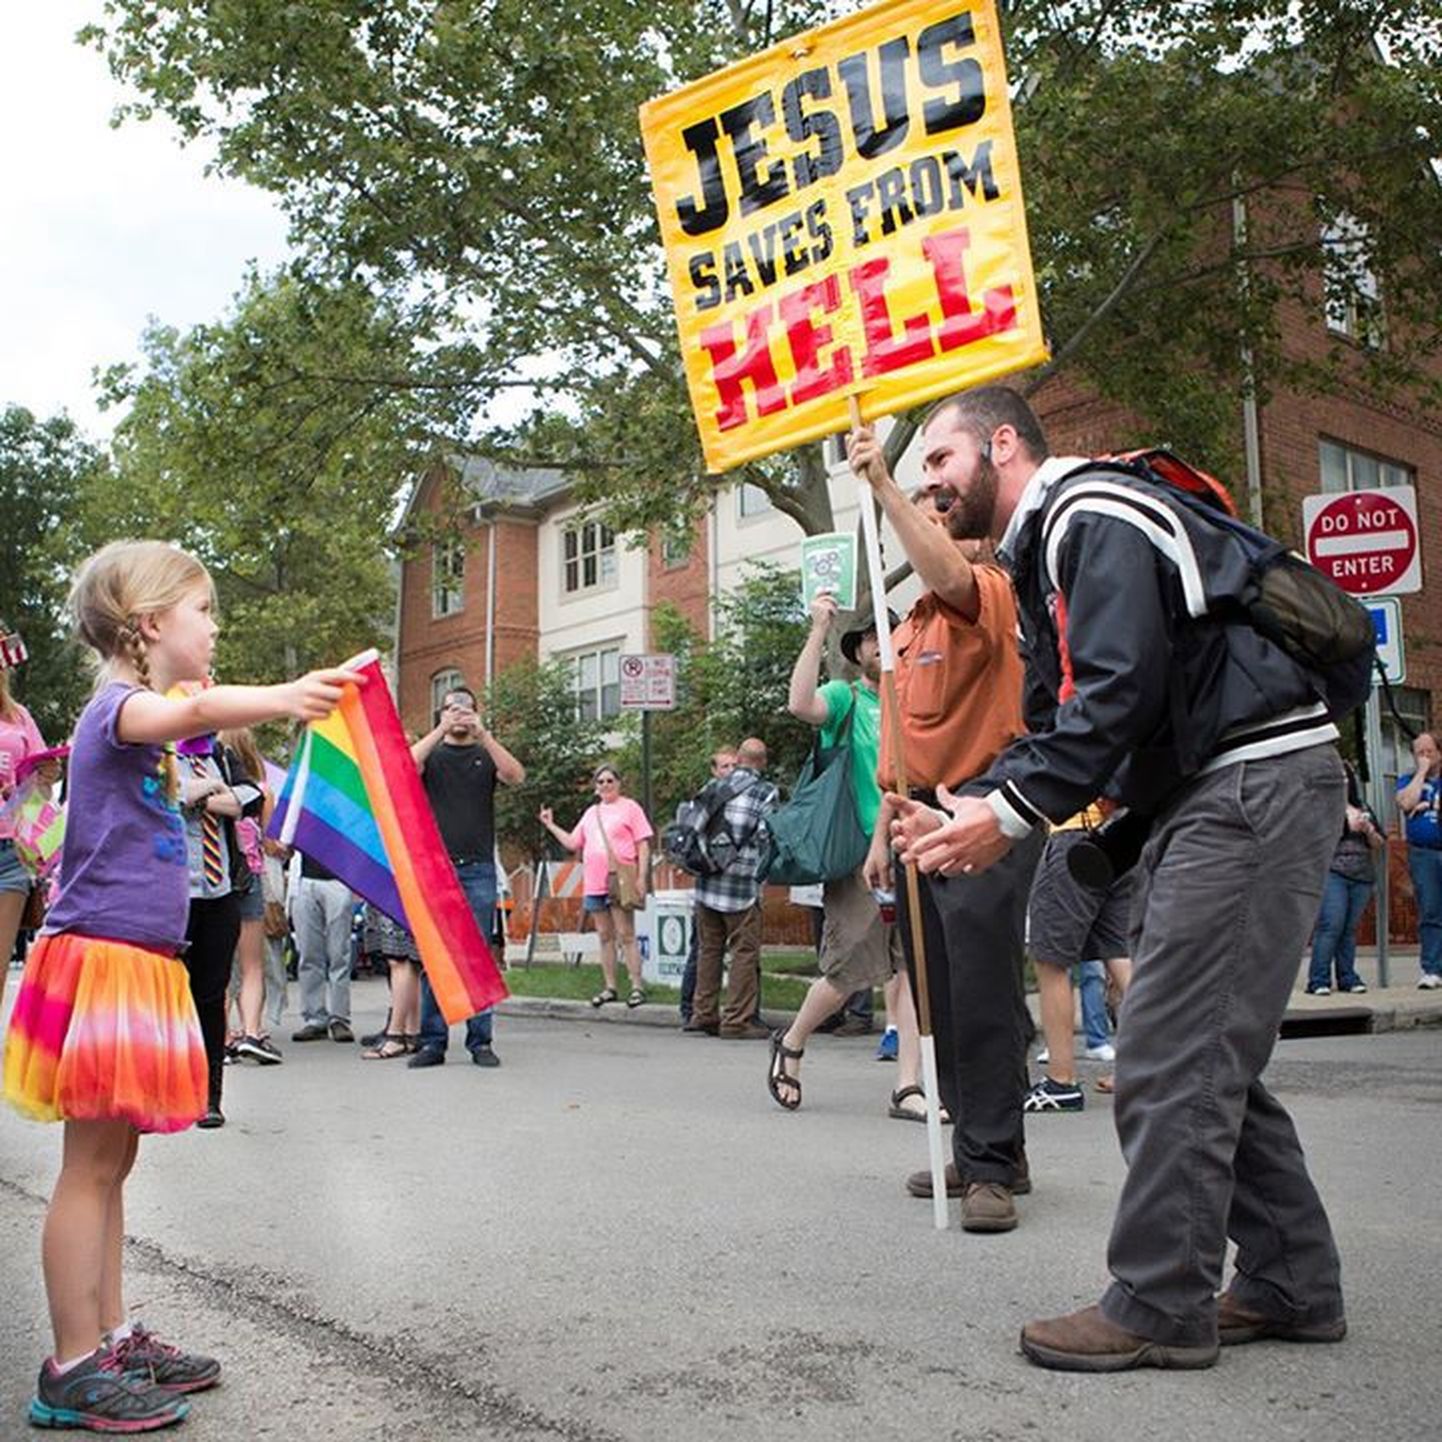 7-aastane tüdruk lehvitas usklikutest meeleavaldajate ees vikerkaarelippu.